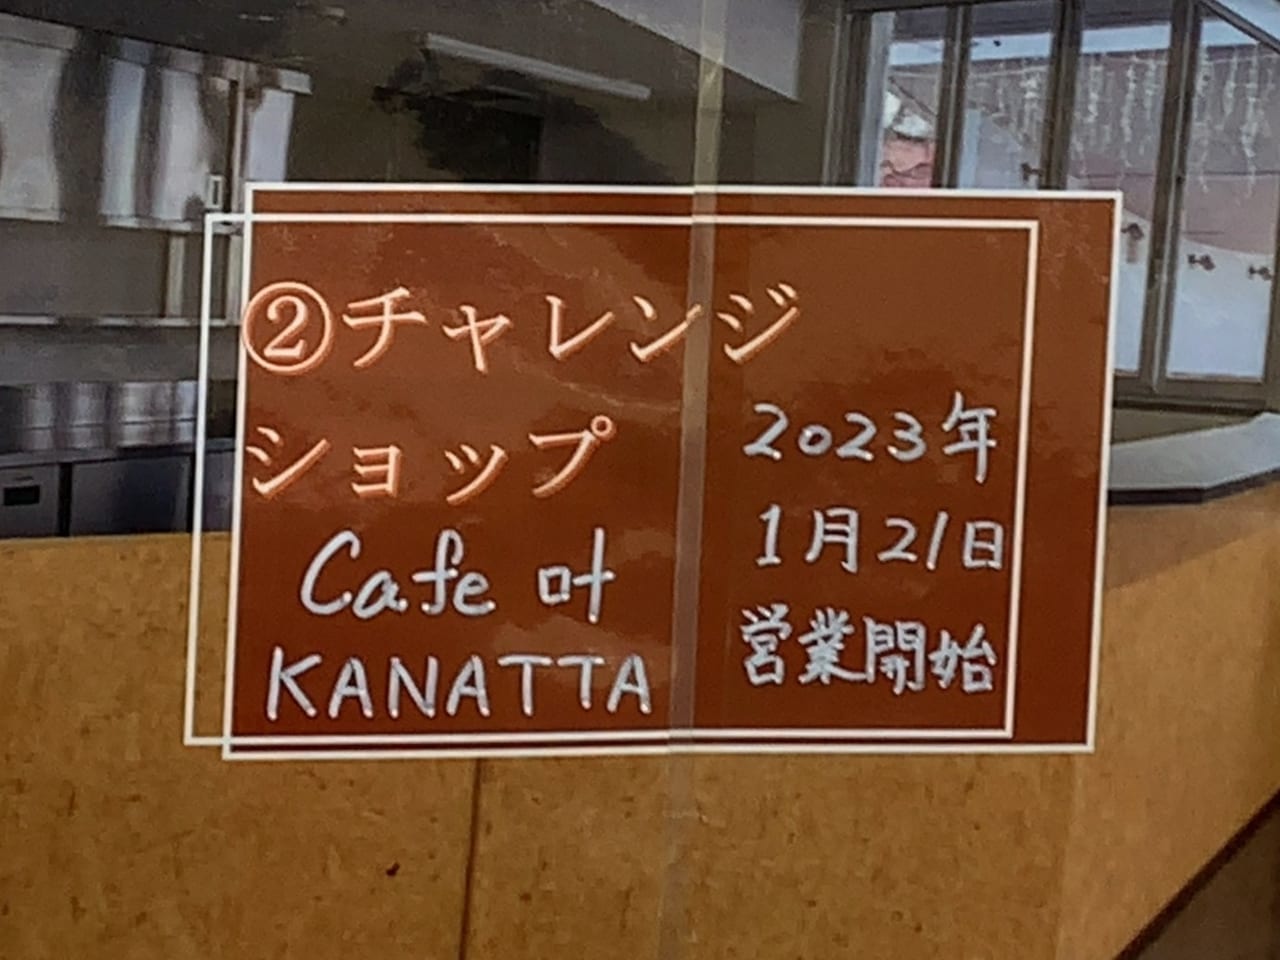 Cafe叶 kanattaオープン02-1